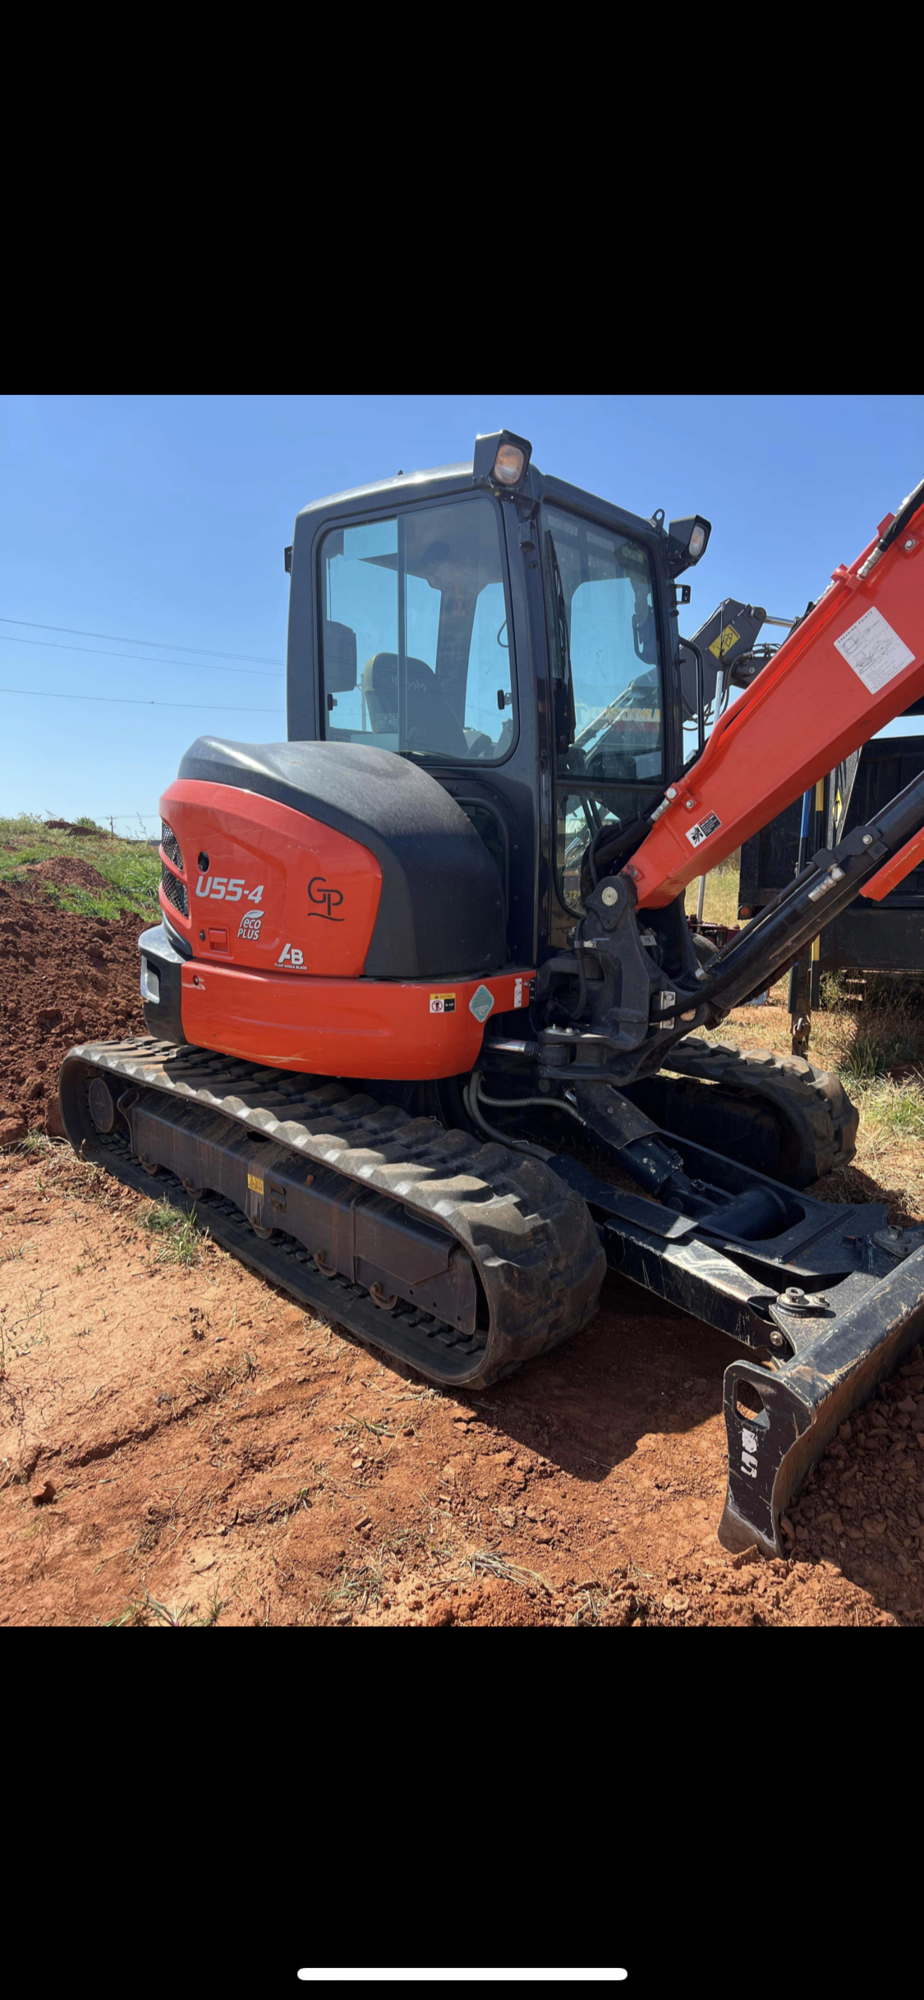 2019 KUBOTA U55-4 Excavators | Iron Listing